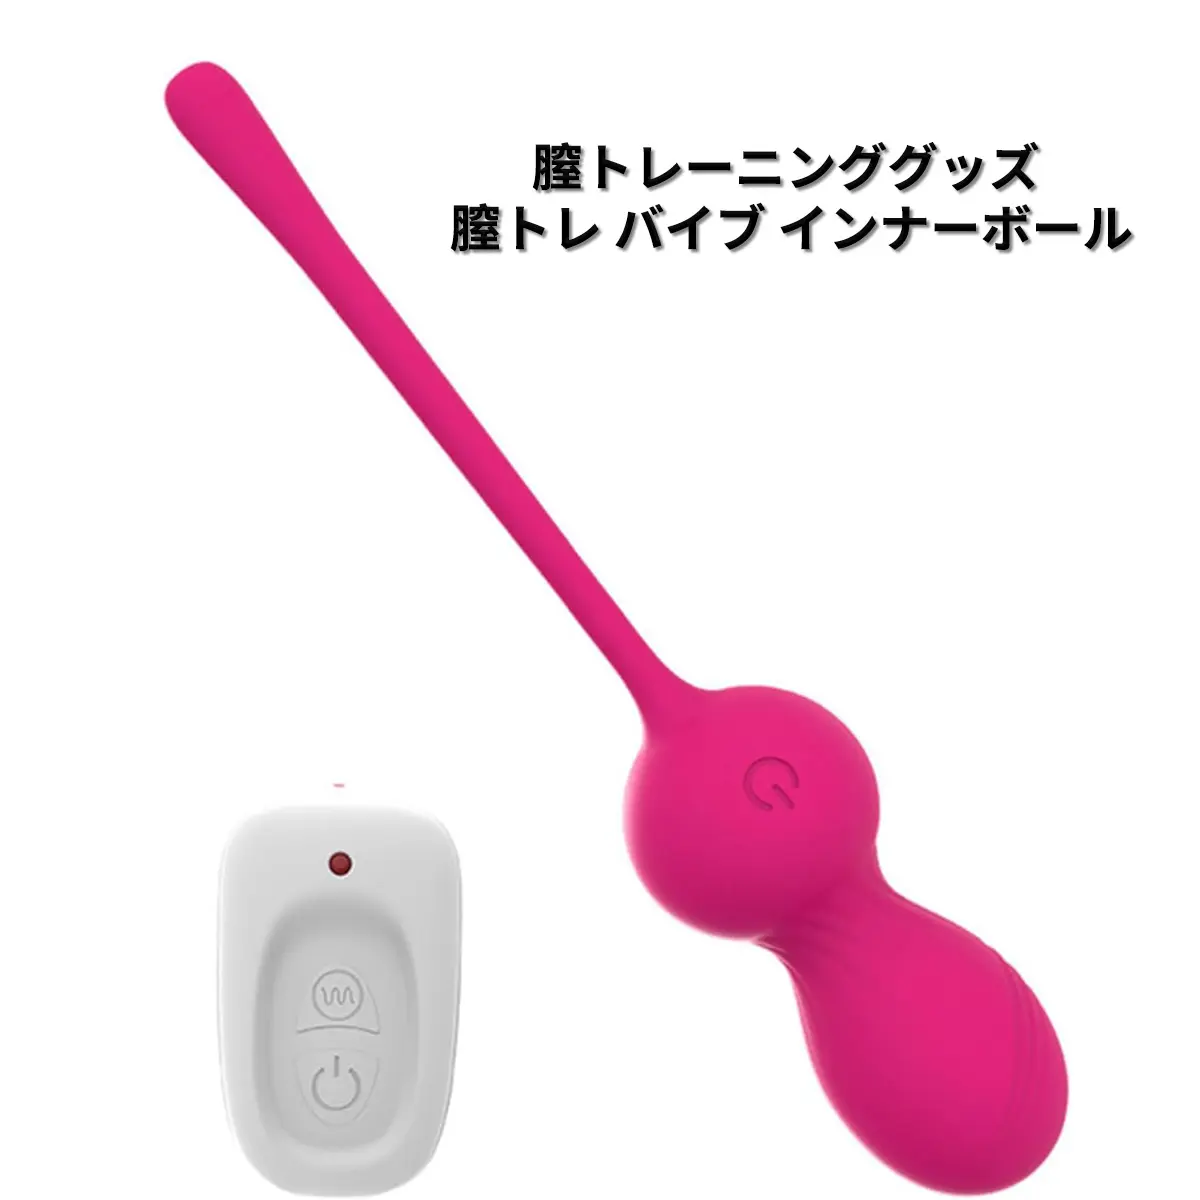 バイブ 女性用 中いき バイブレーター 女性用 強力 極太 vibrato toys for girls wireless